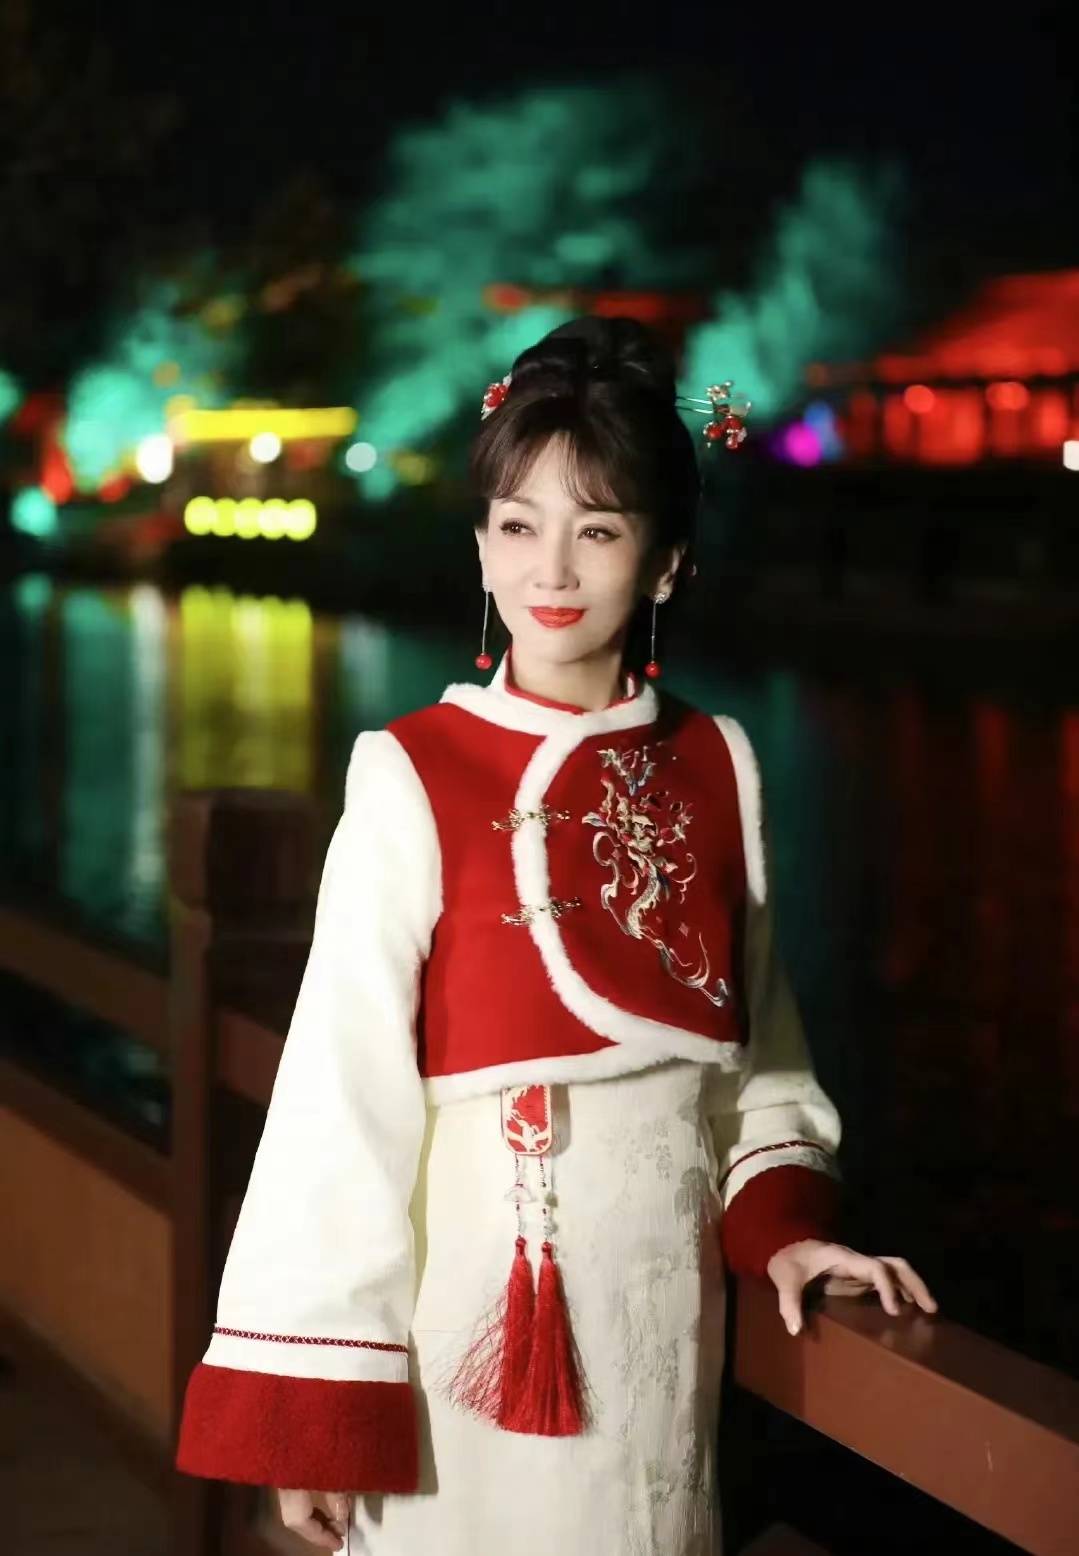 照片中的赵雅芝,身着红色中国风马甲和白色旗袍,不仅展现了浓厚的节日